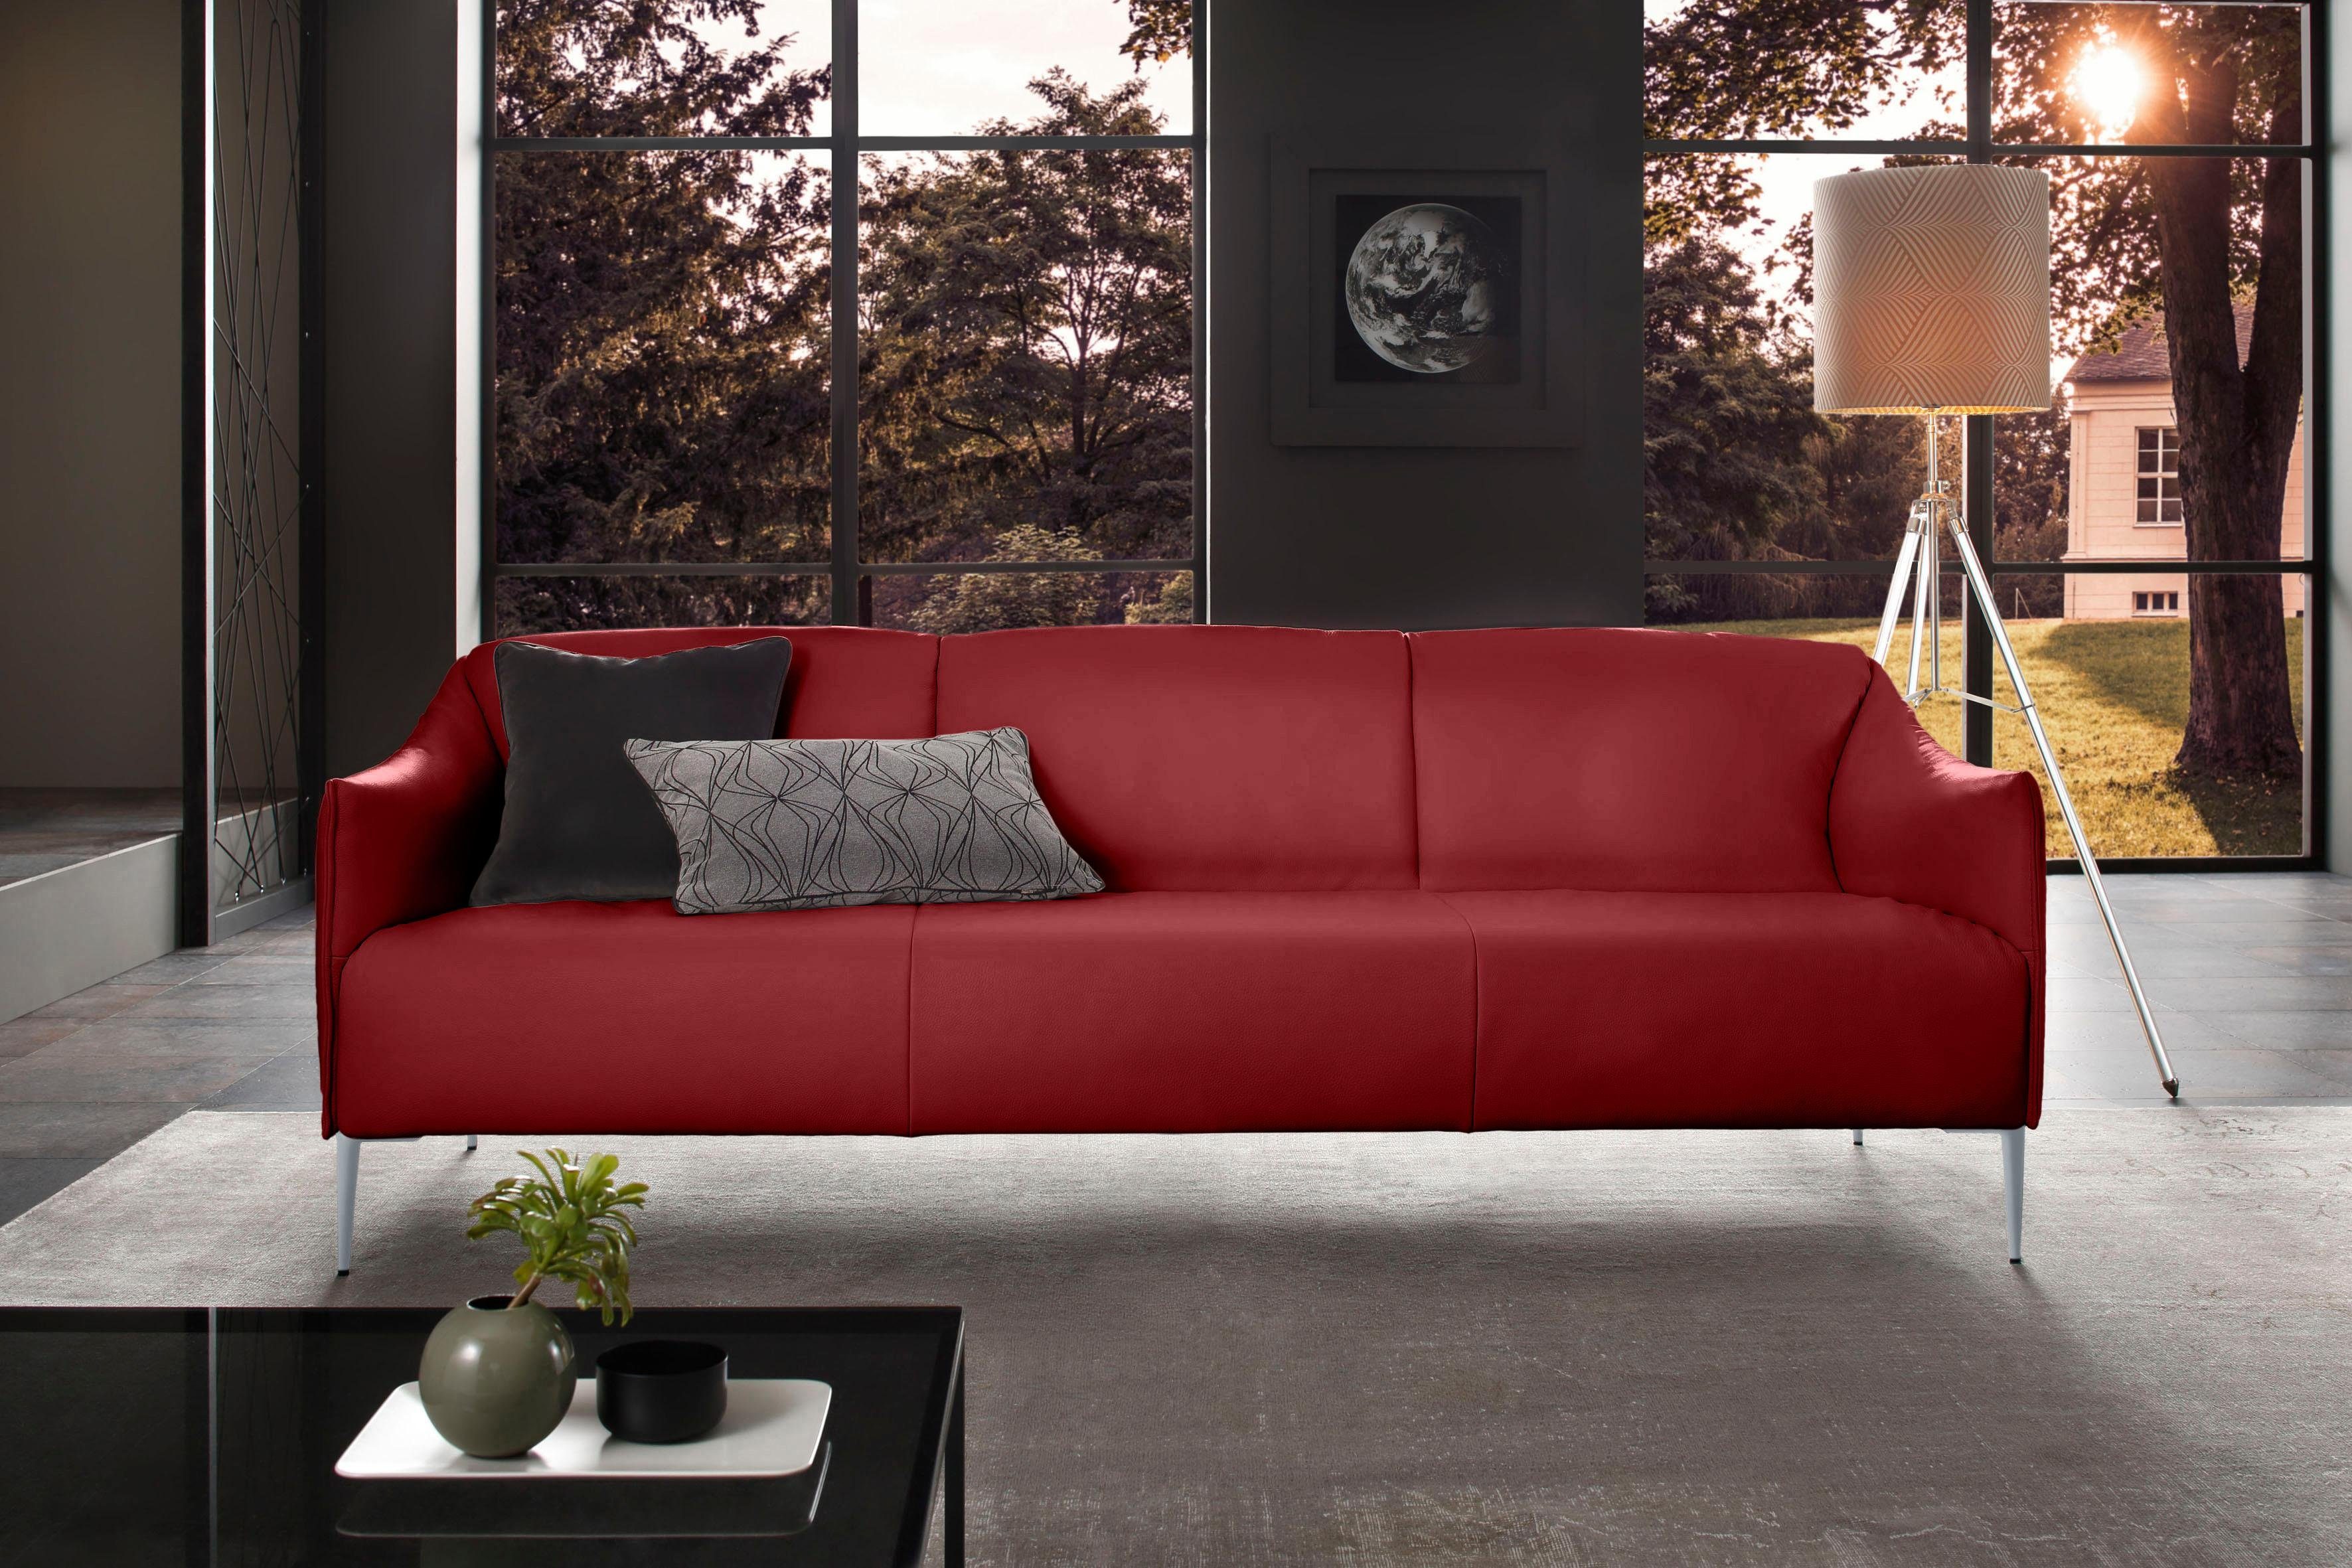 Silber Metallfüßen W.SCHILLIG Breite 3-Sitzer cm 224 Z59 matt, mit in sally, ruby red